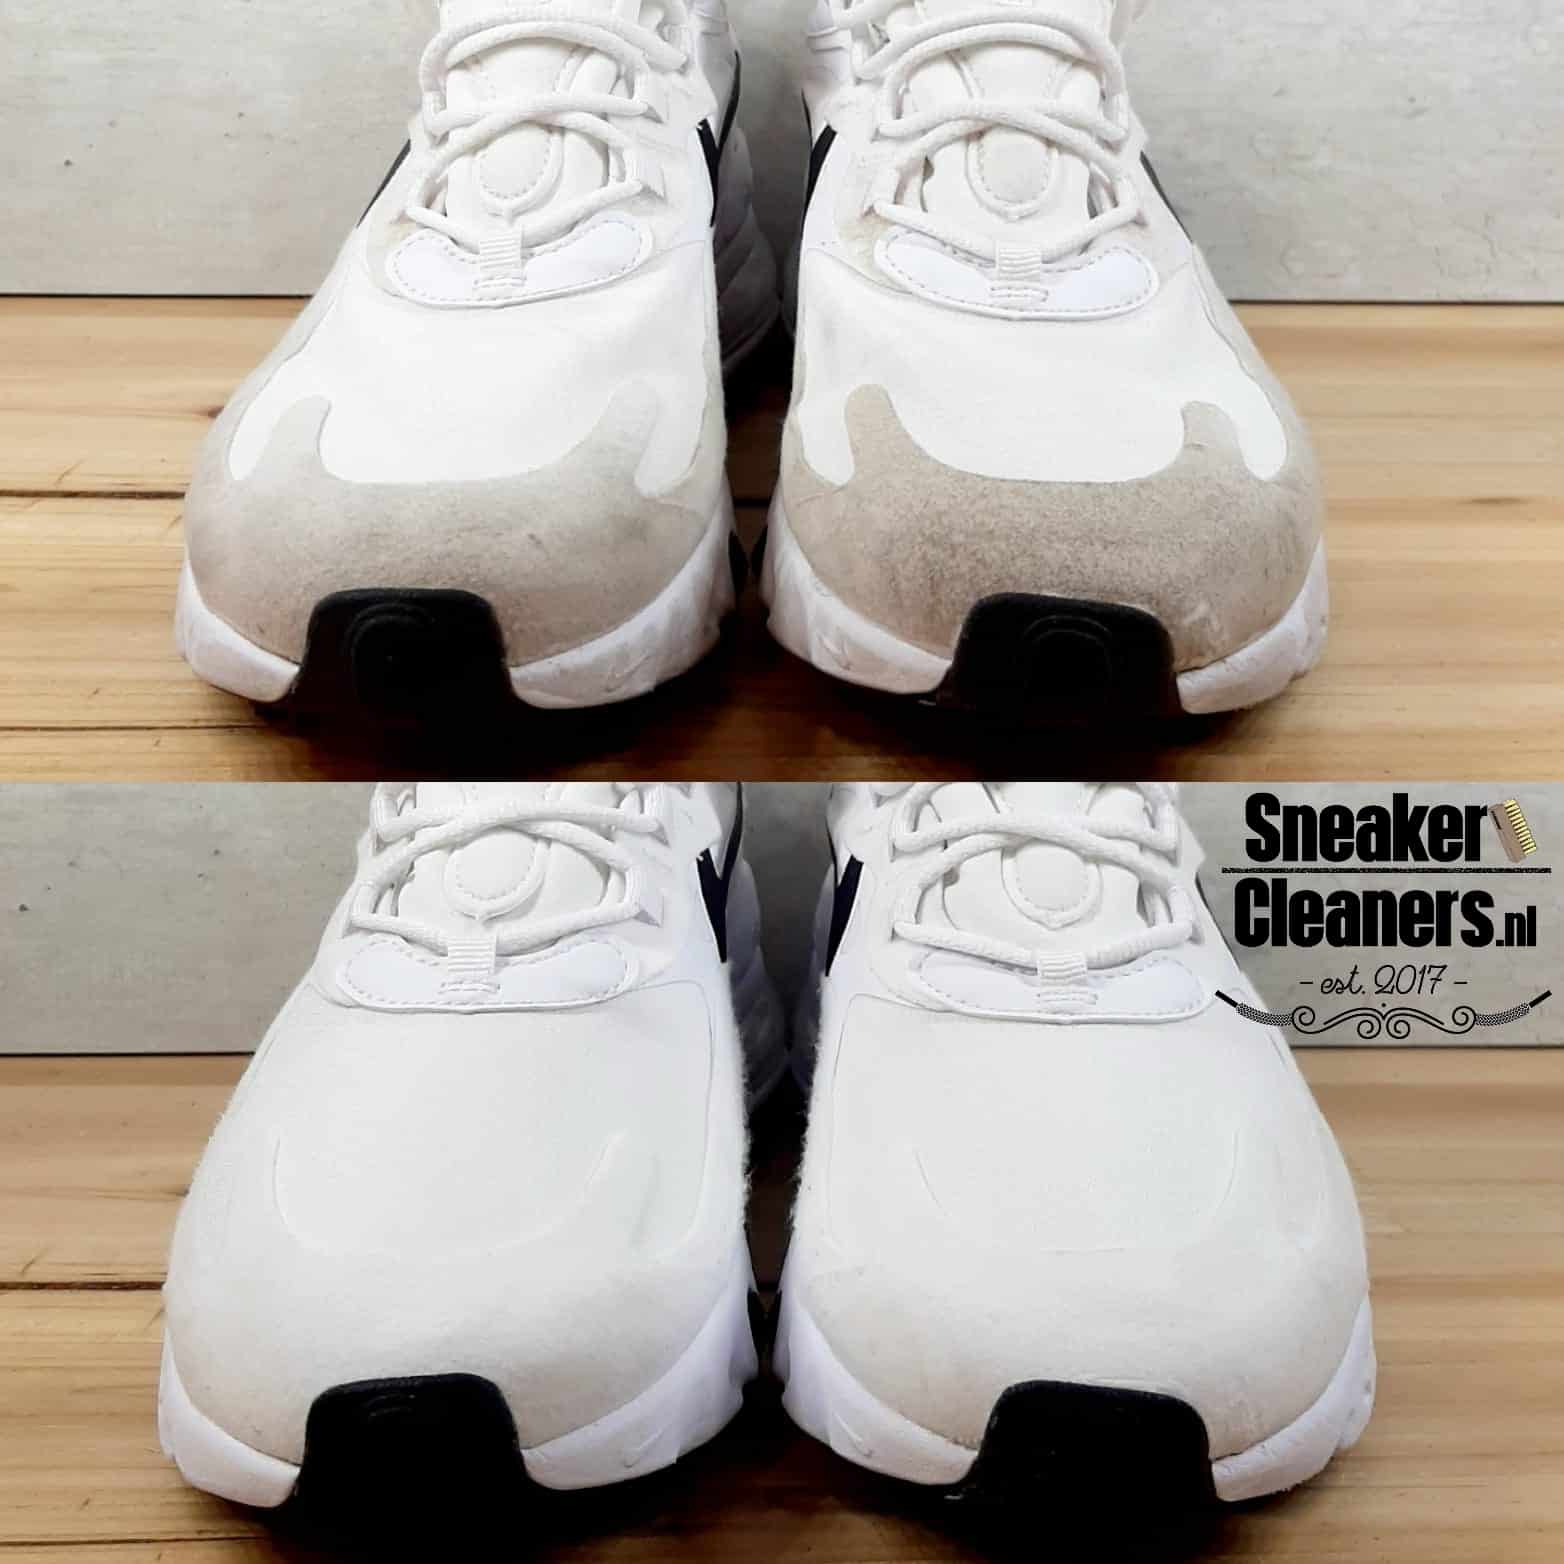 Bedrog Zoek machine optimalisatie mooi Nike Airmax professioneel laten wassen doe je bij SneakerCleaners!